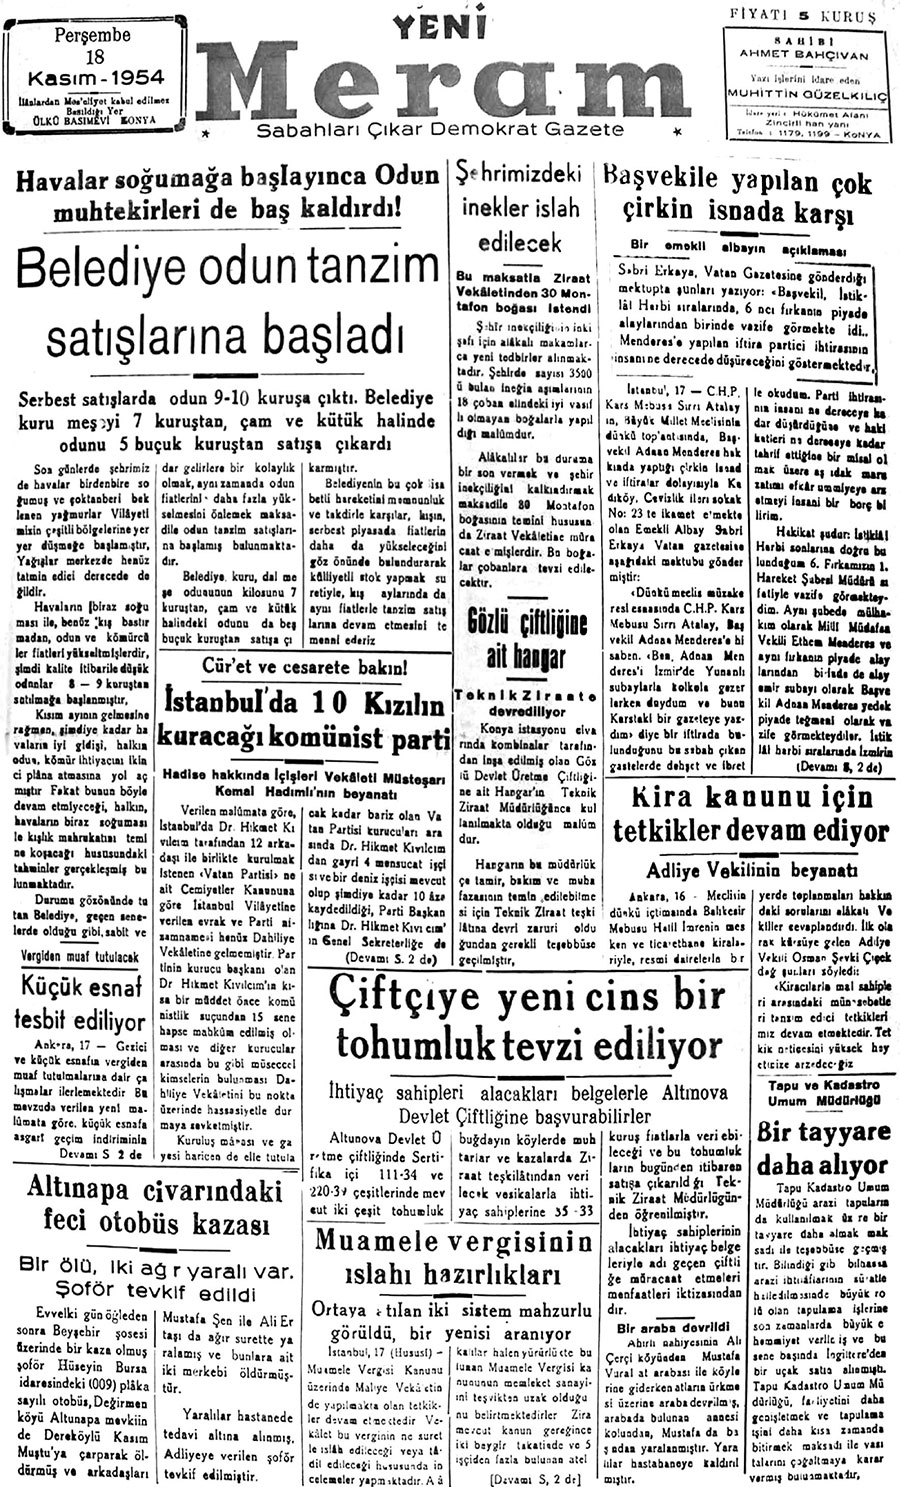 18 Kasım 2017 Yeni Meram Gazetesi